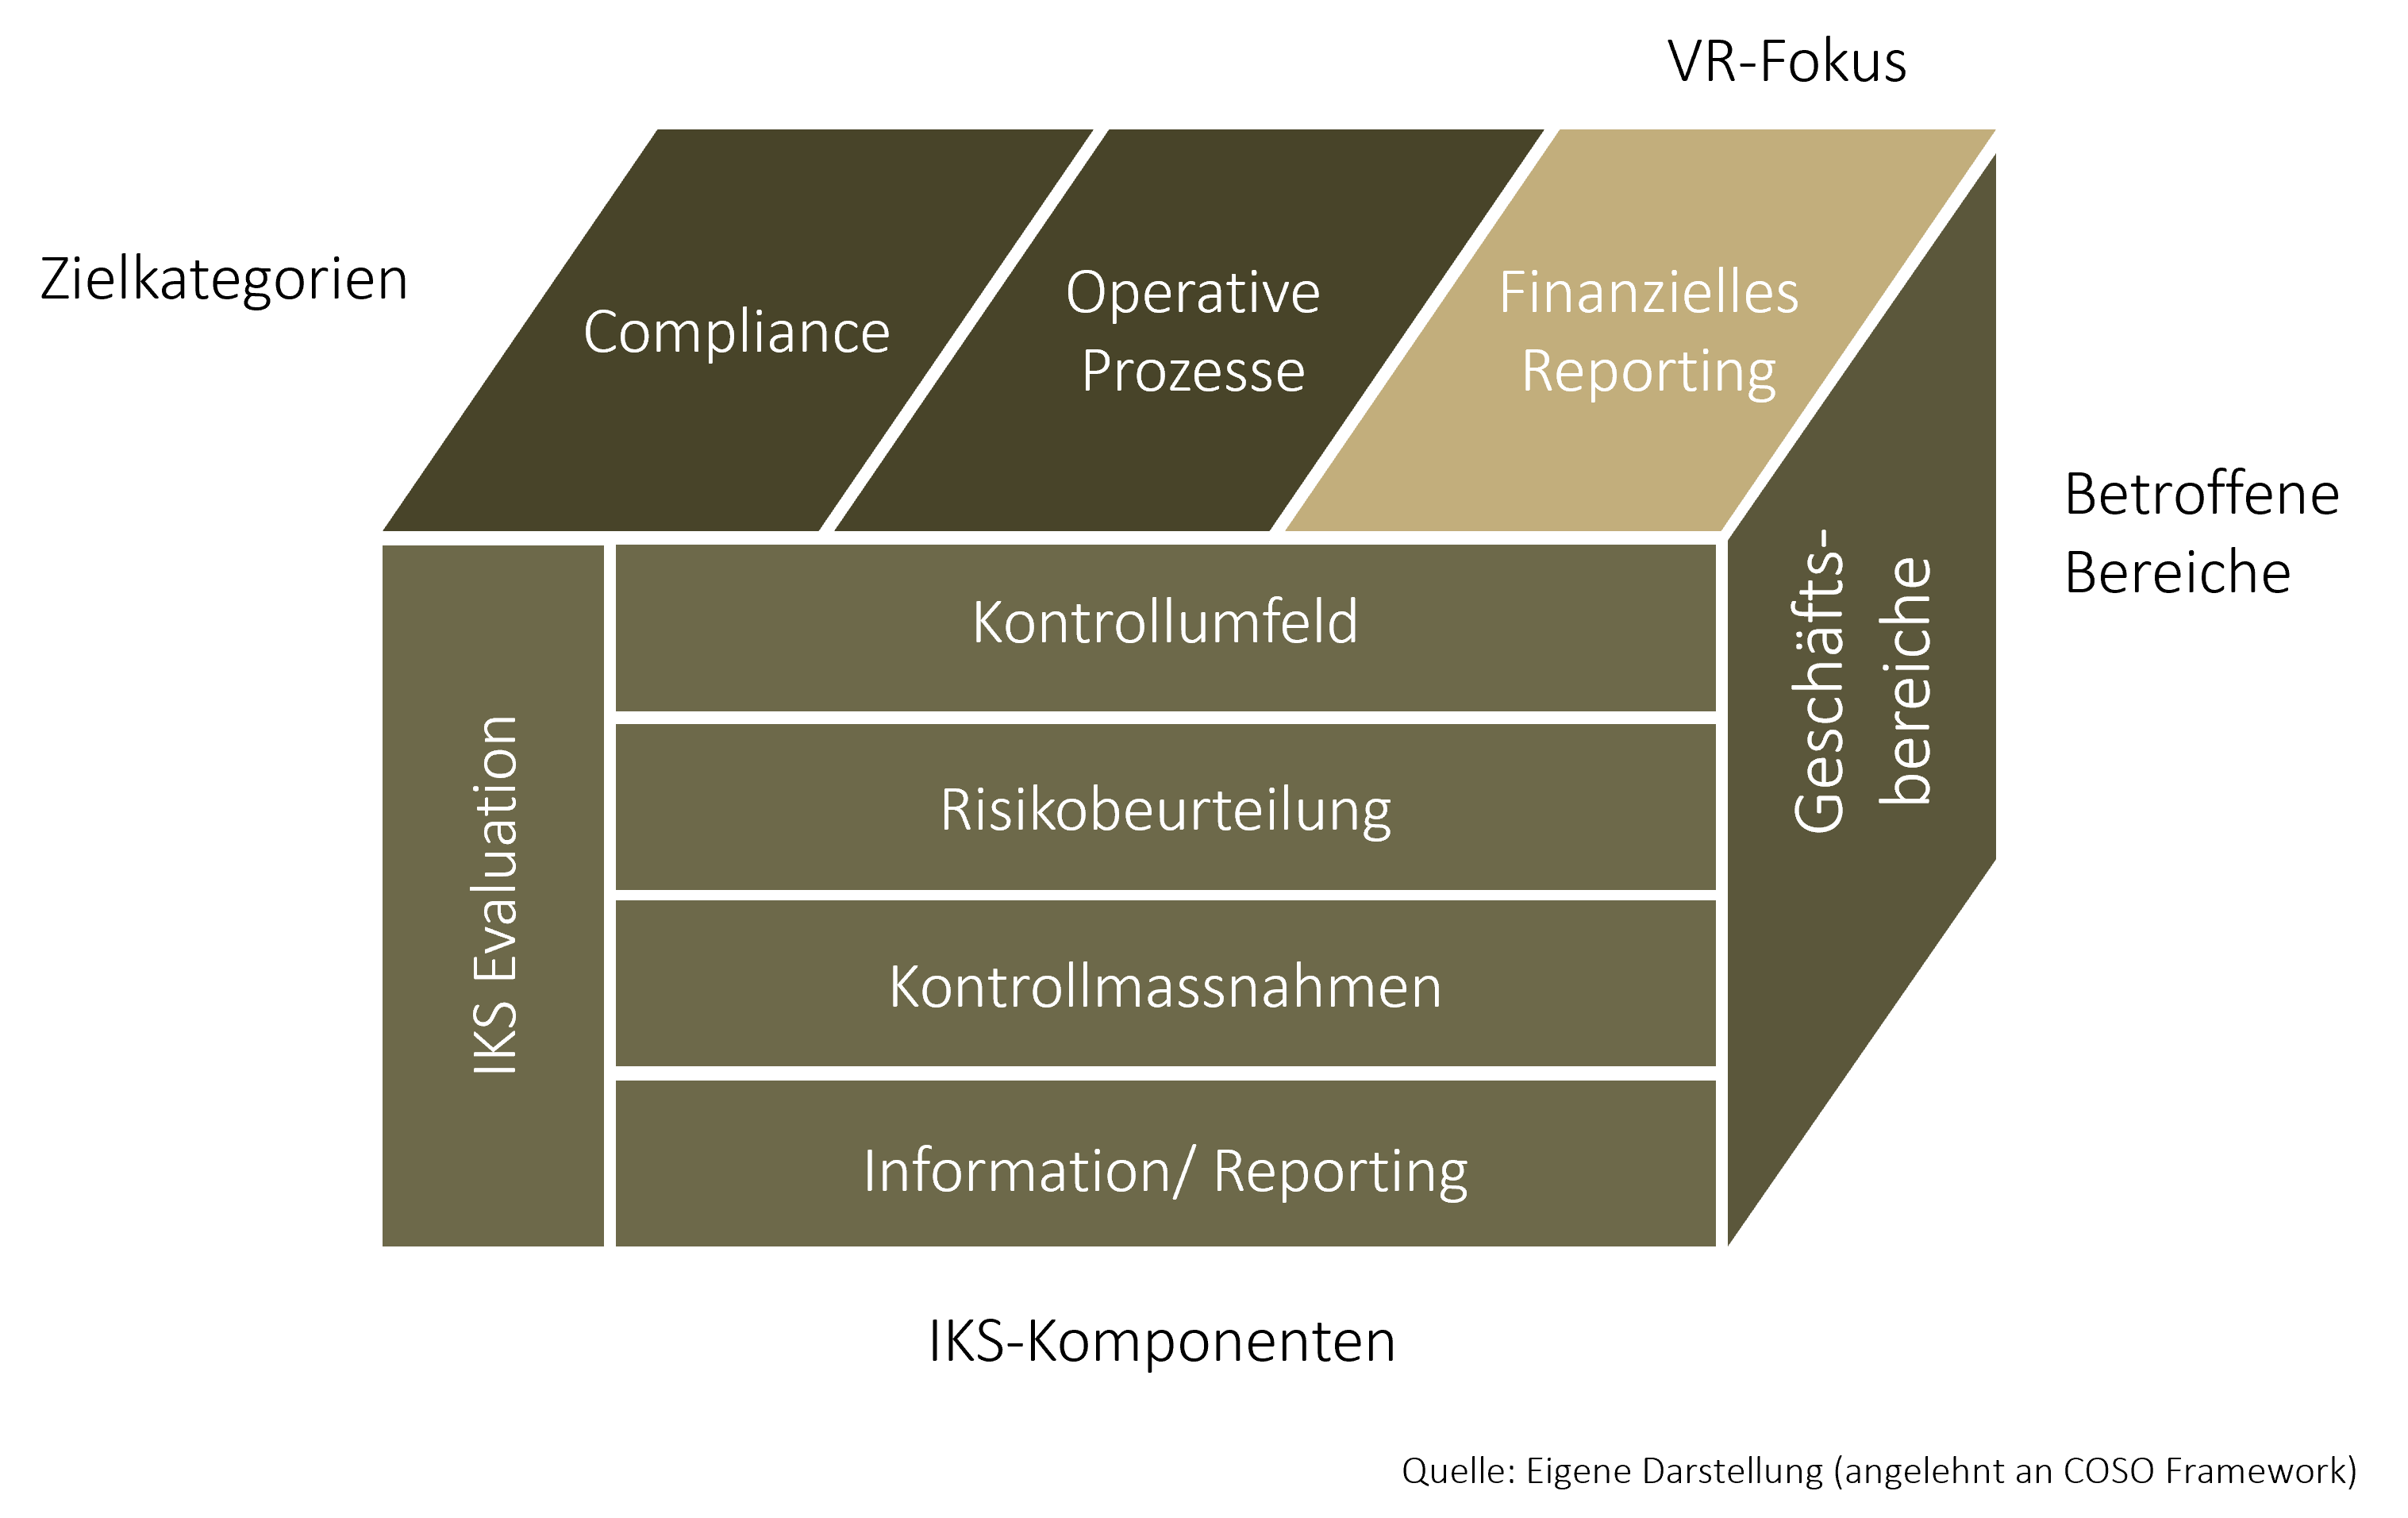 Die Grafik zeigt einen Würfel der an das COSO Framework angelehnt ist und die Bestandteile des Internen Kontrollsystems (IKS) erklärt.